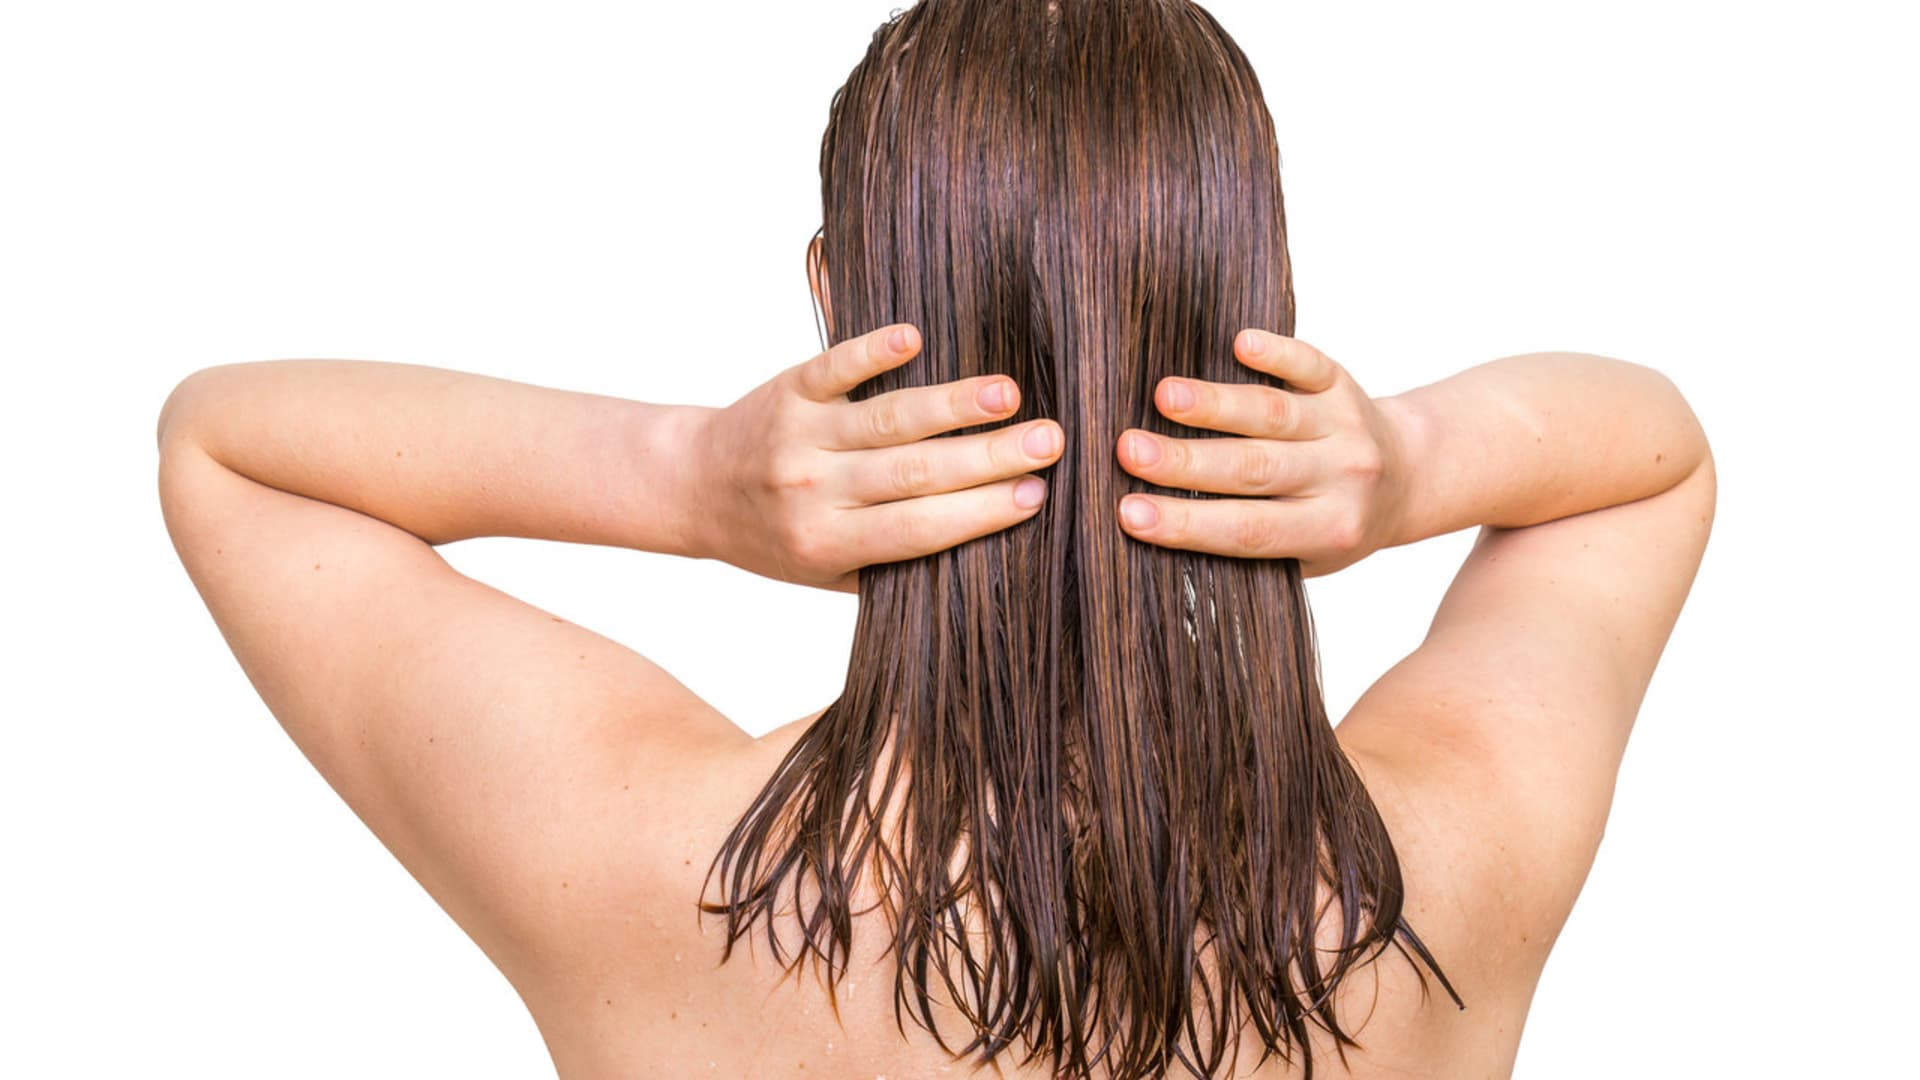 Proč by ženy neměly chodit spát s mokrými vlasy